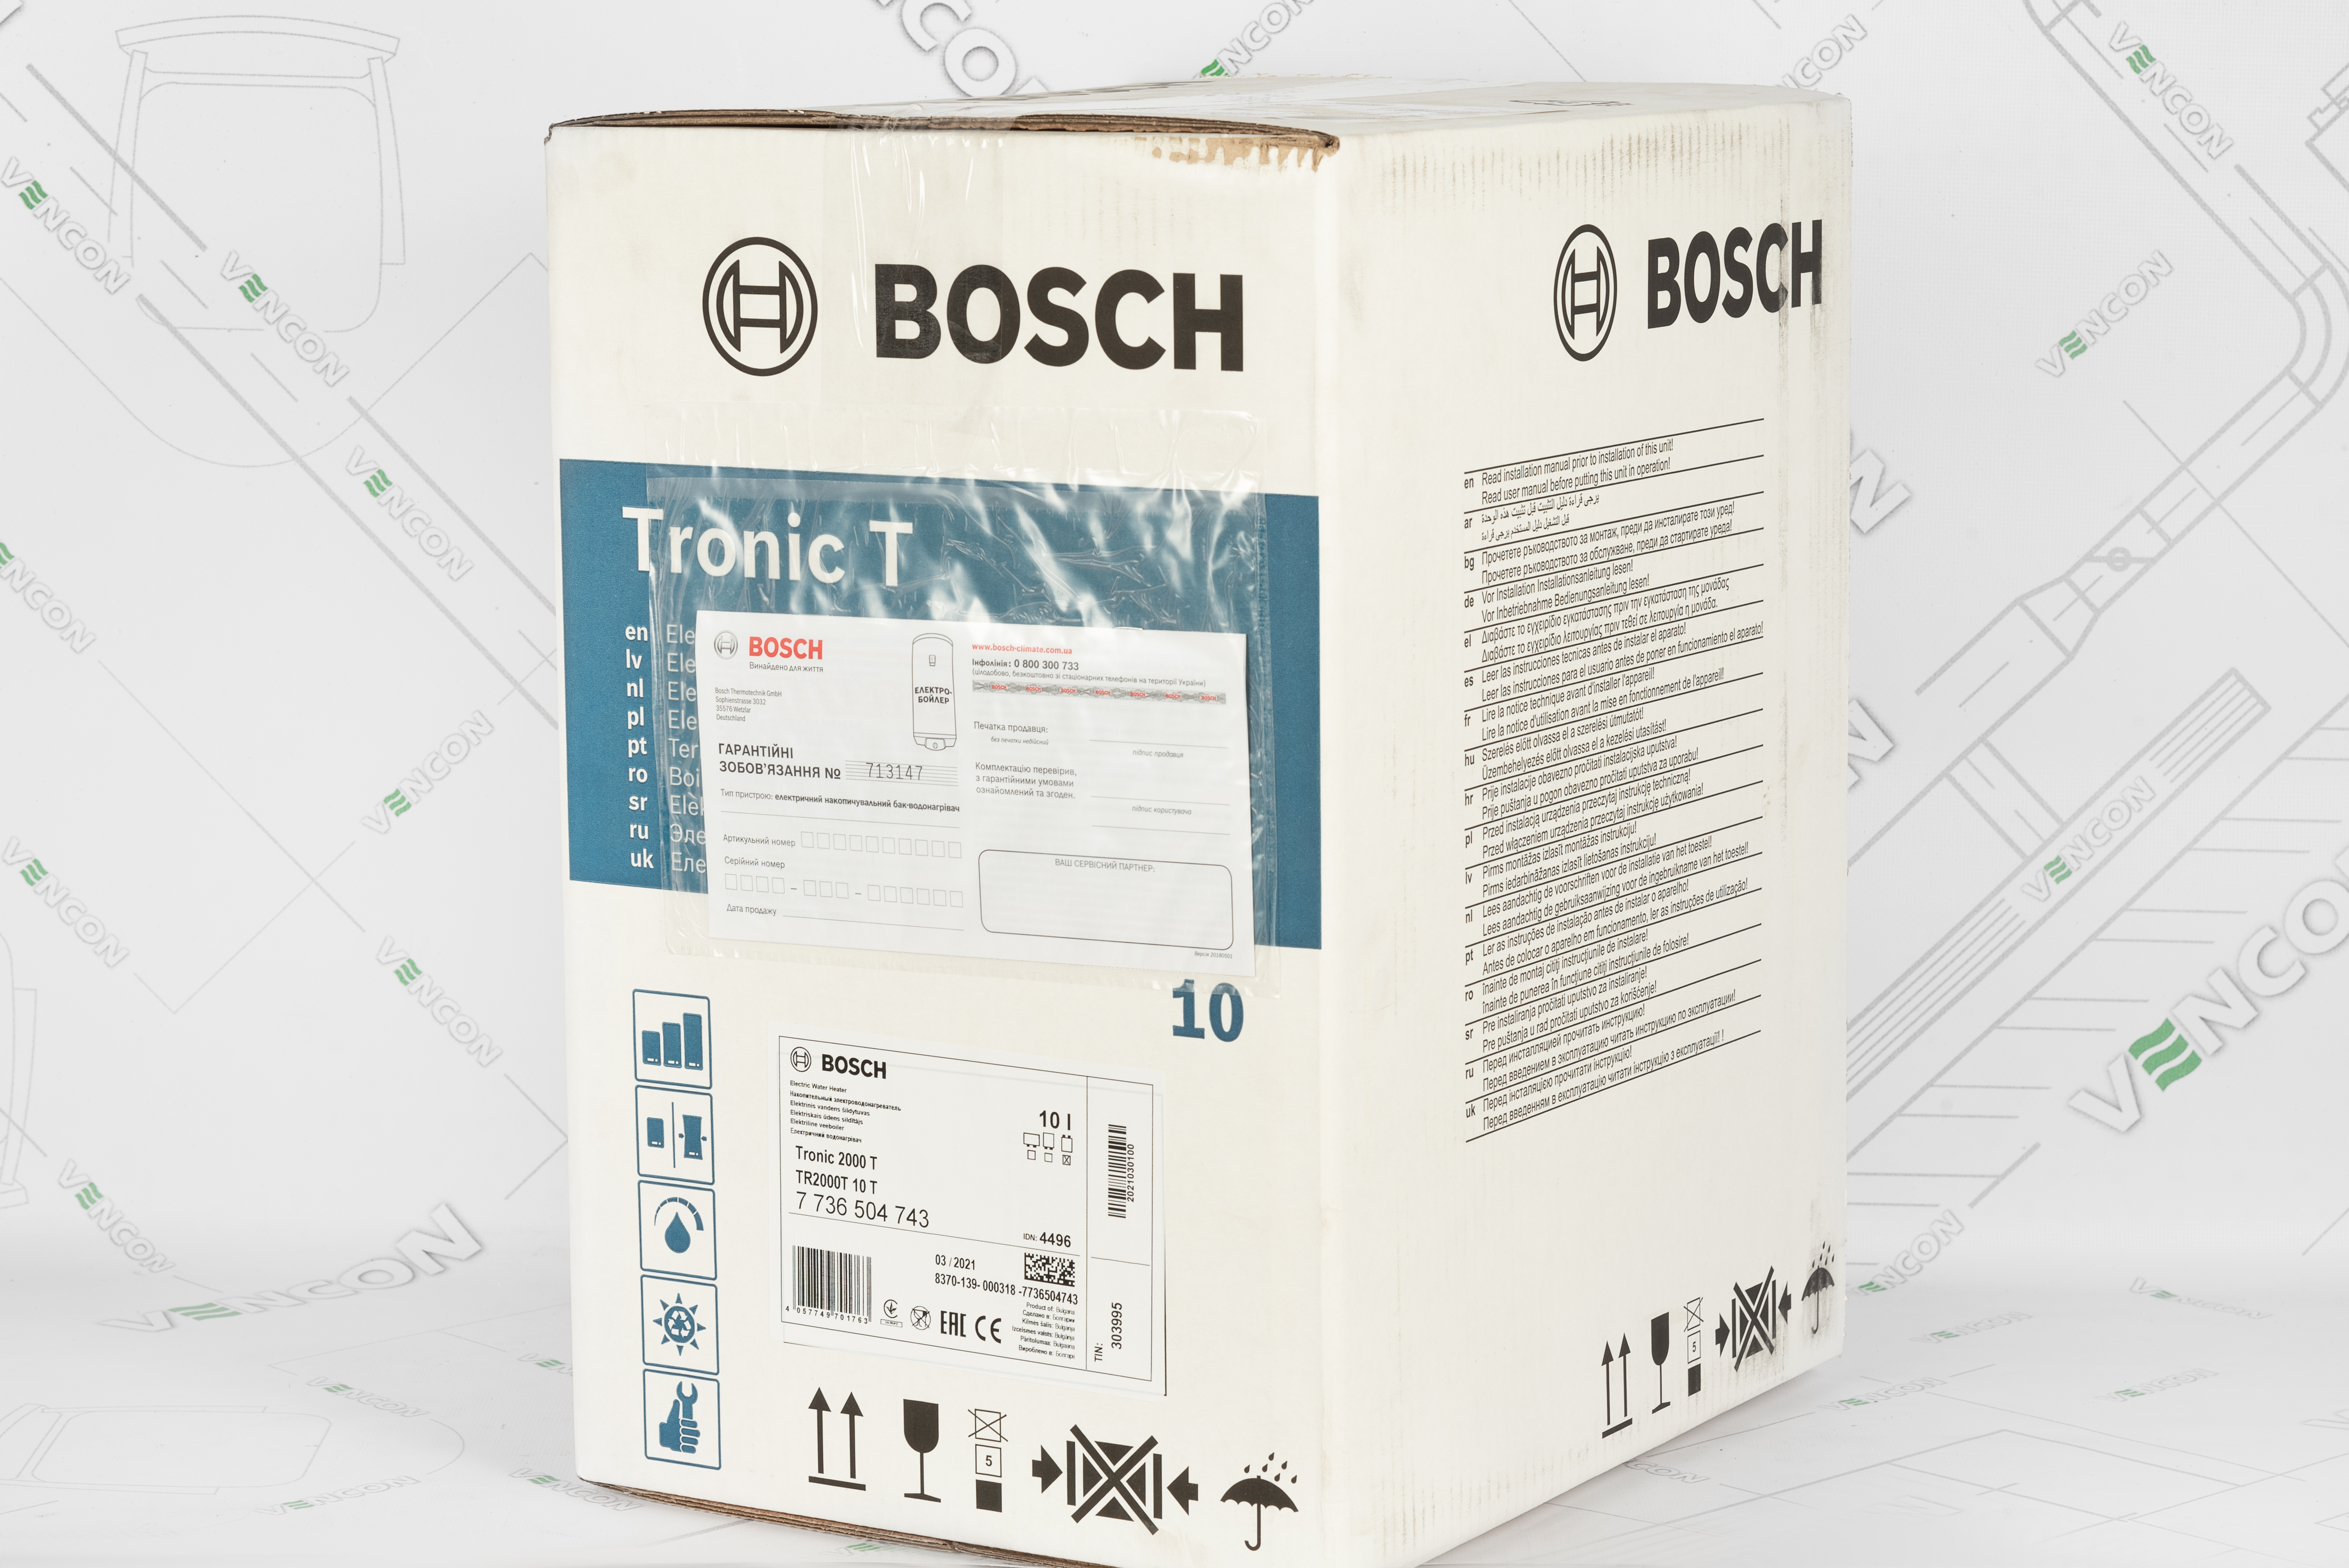 Bosch TR 2000 T 10 T (7736504743) в магазине в Киеве - фото 10